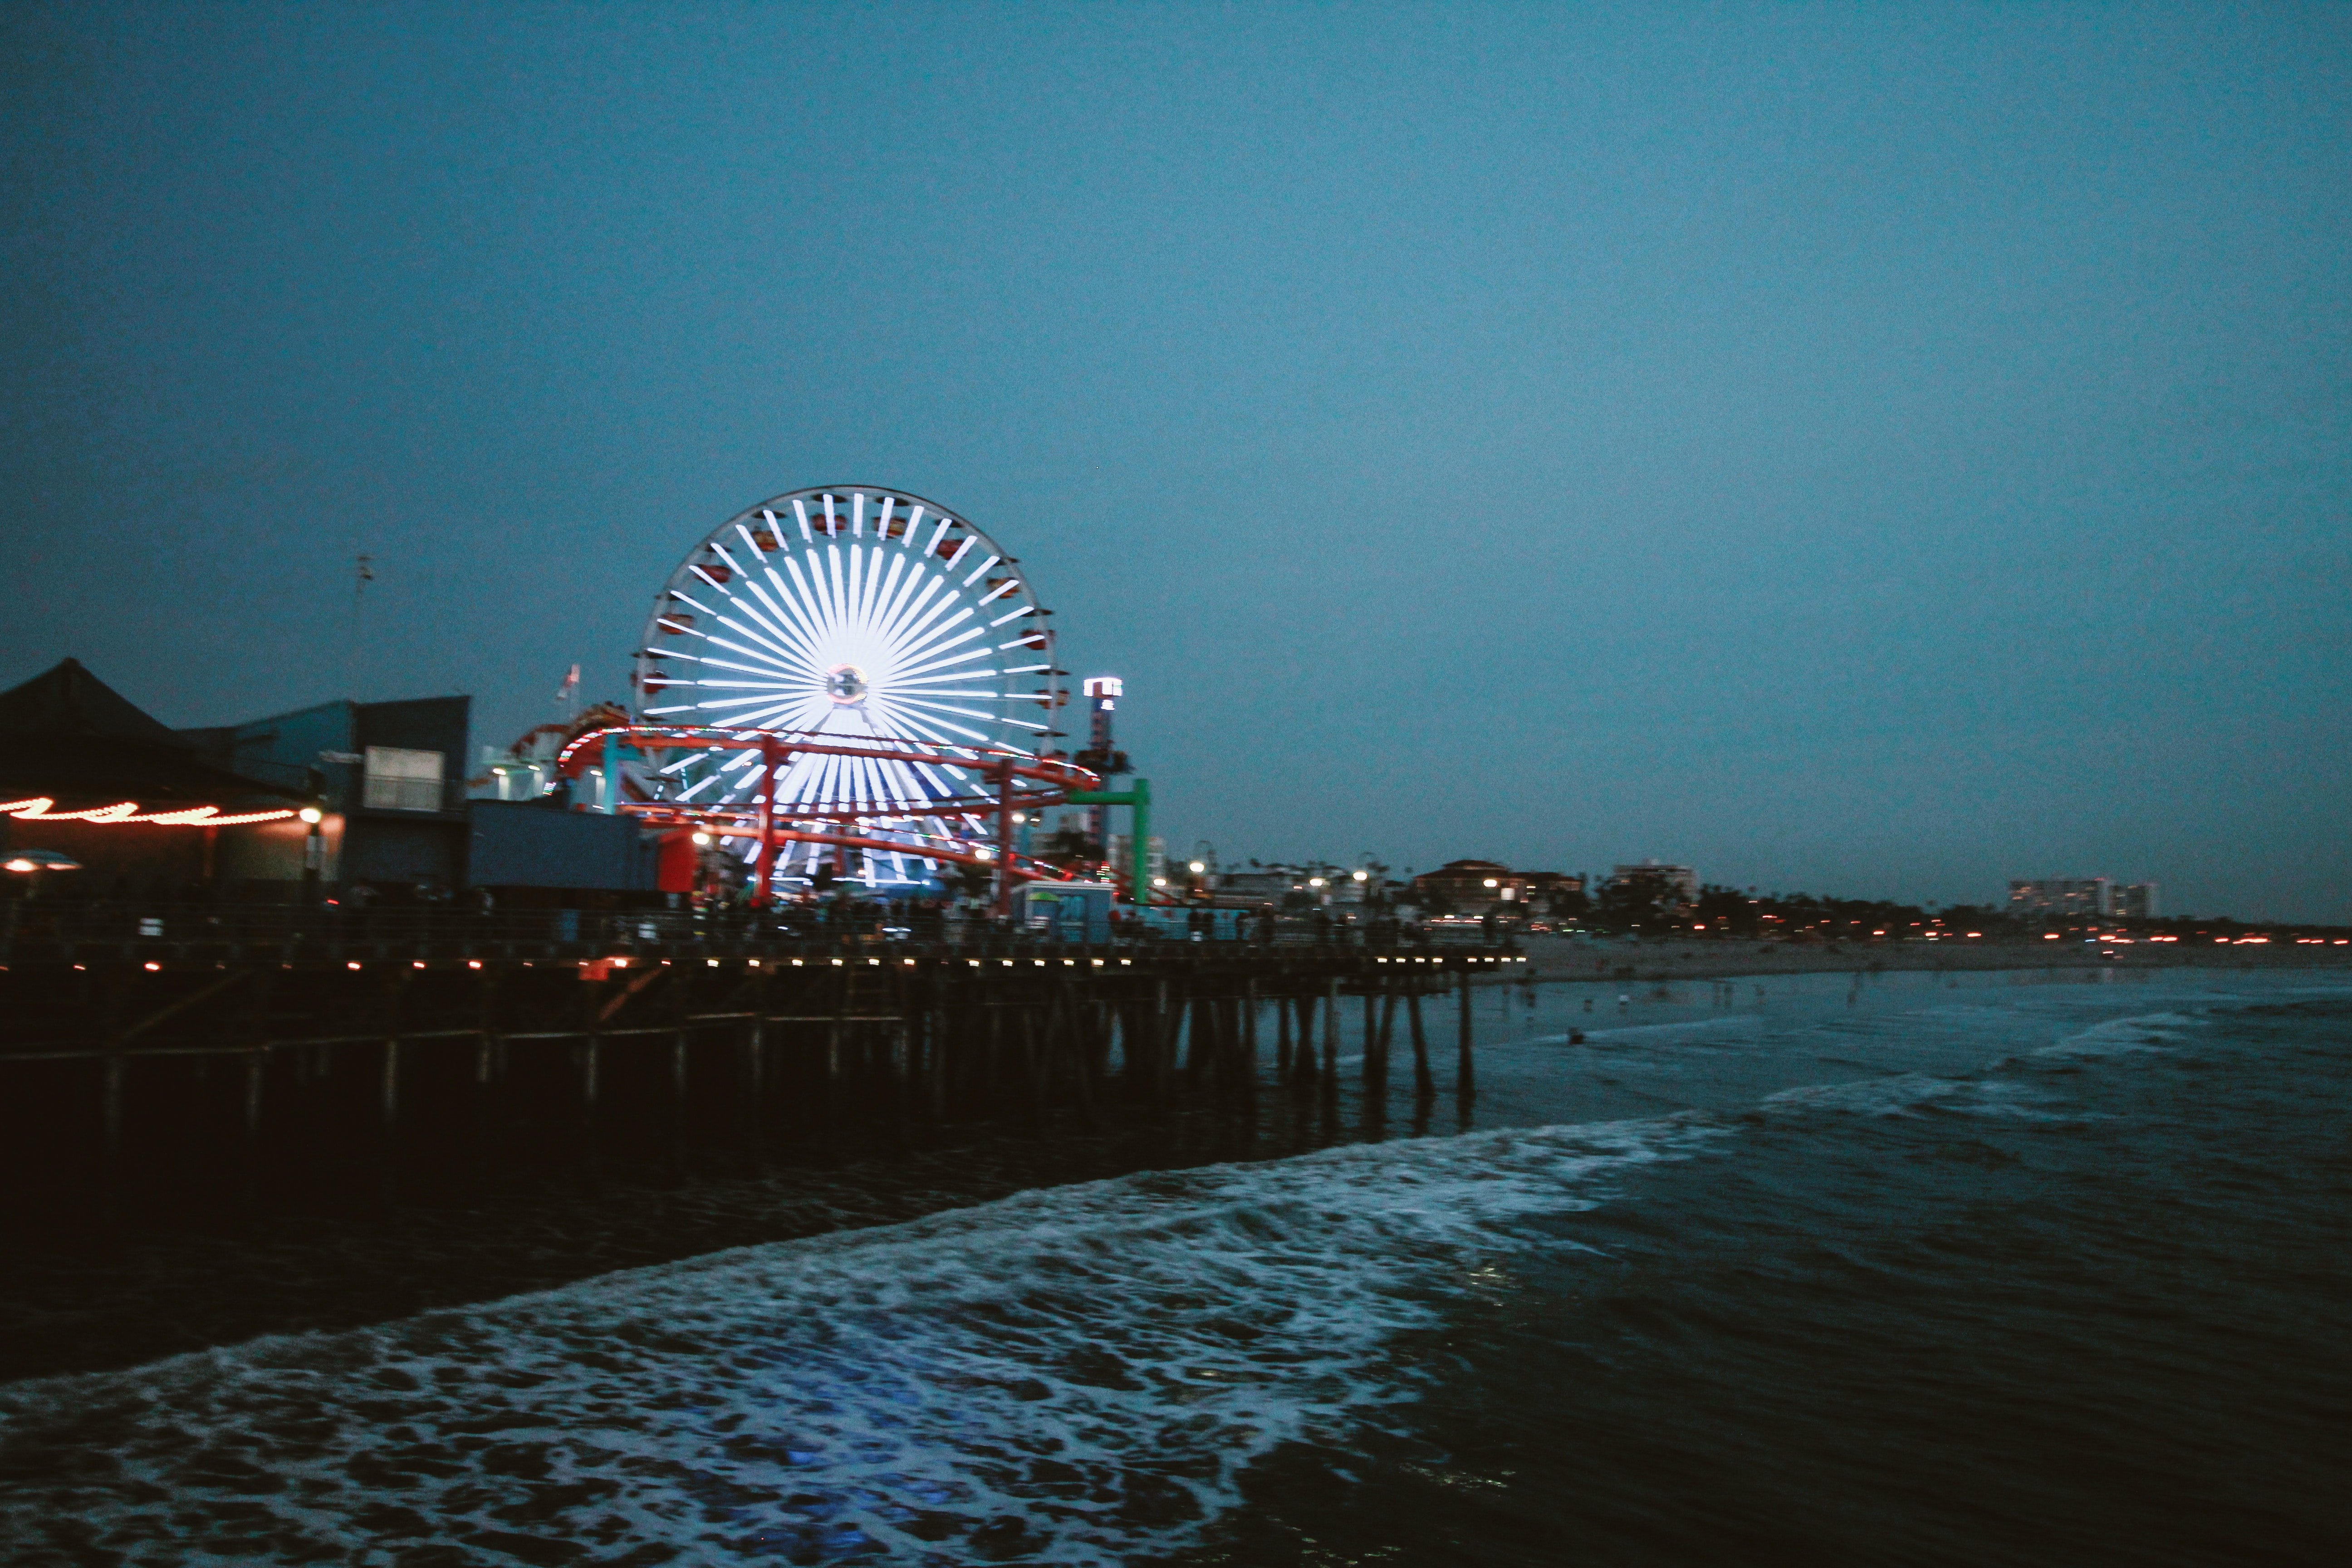 Ferris wheel lit during night time photo